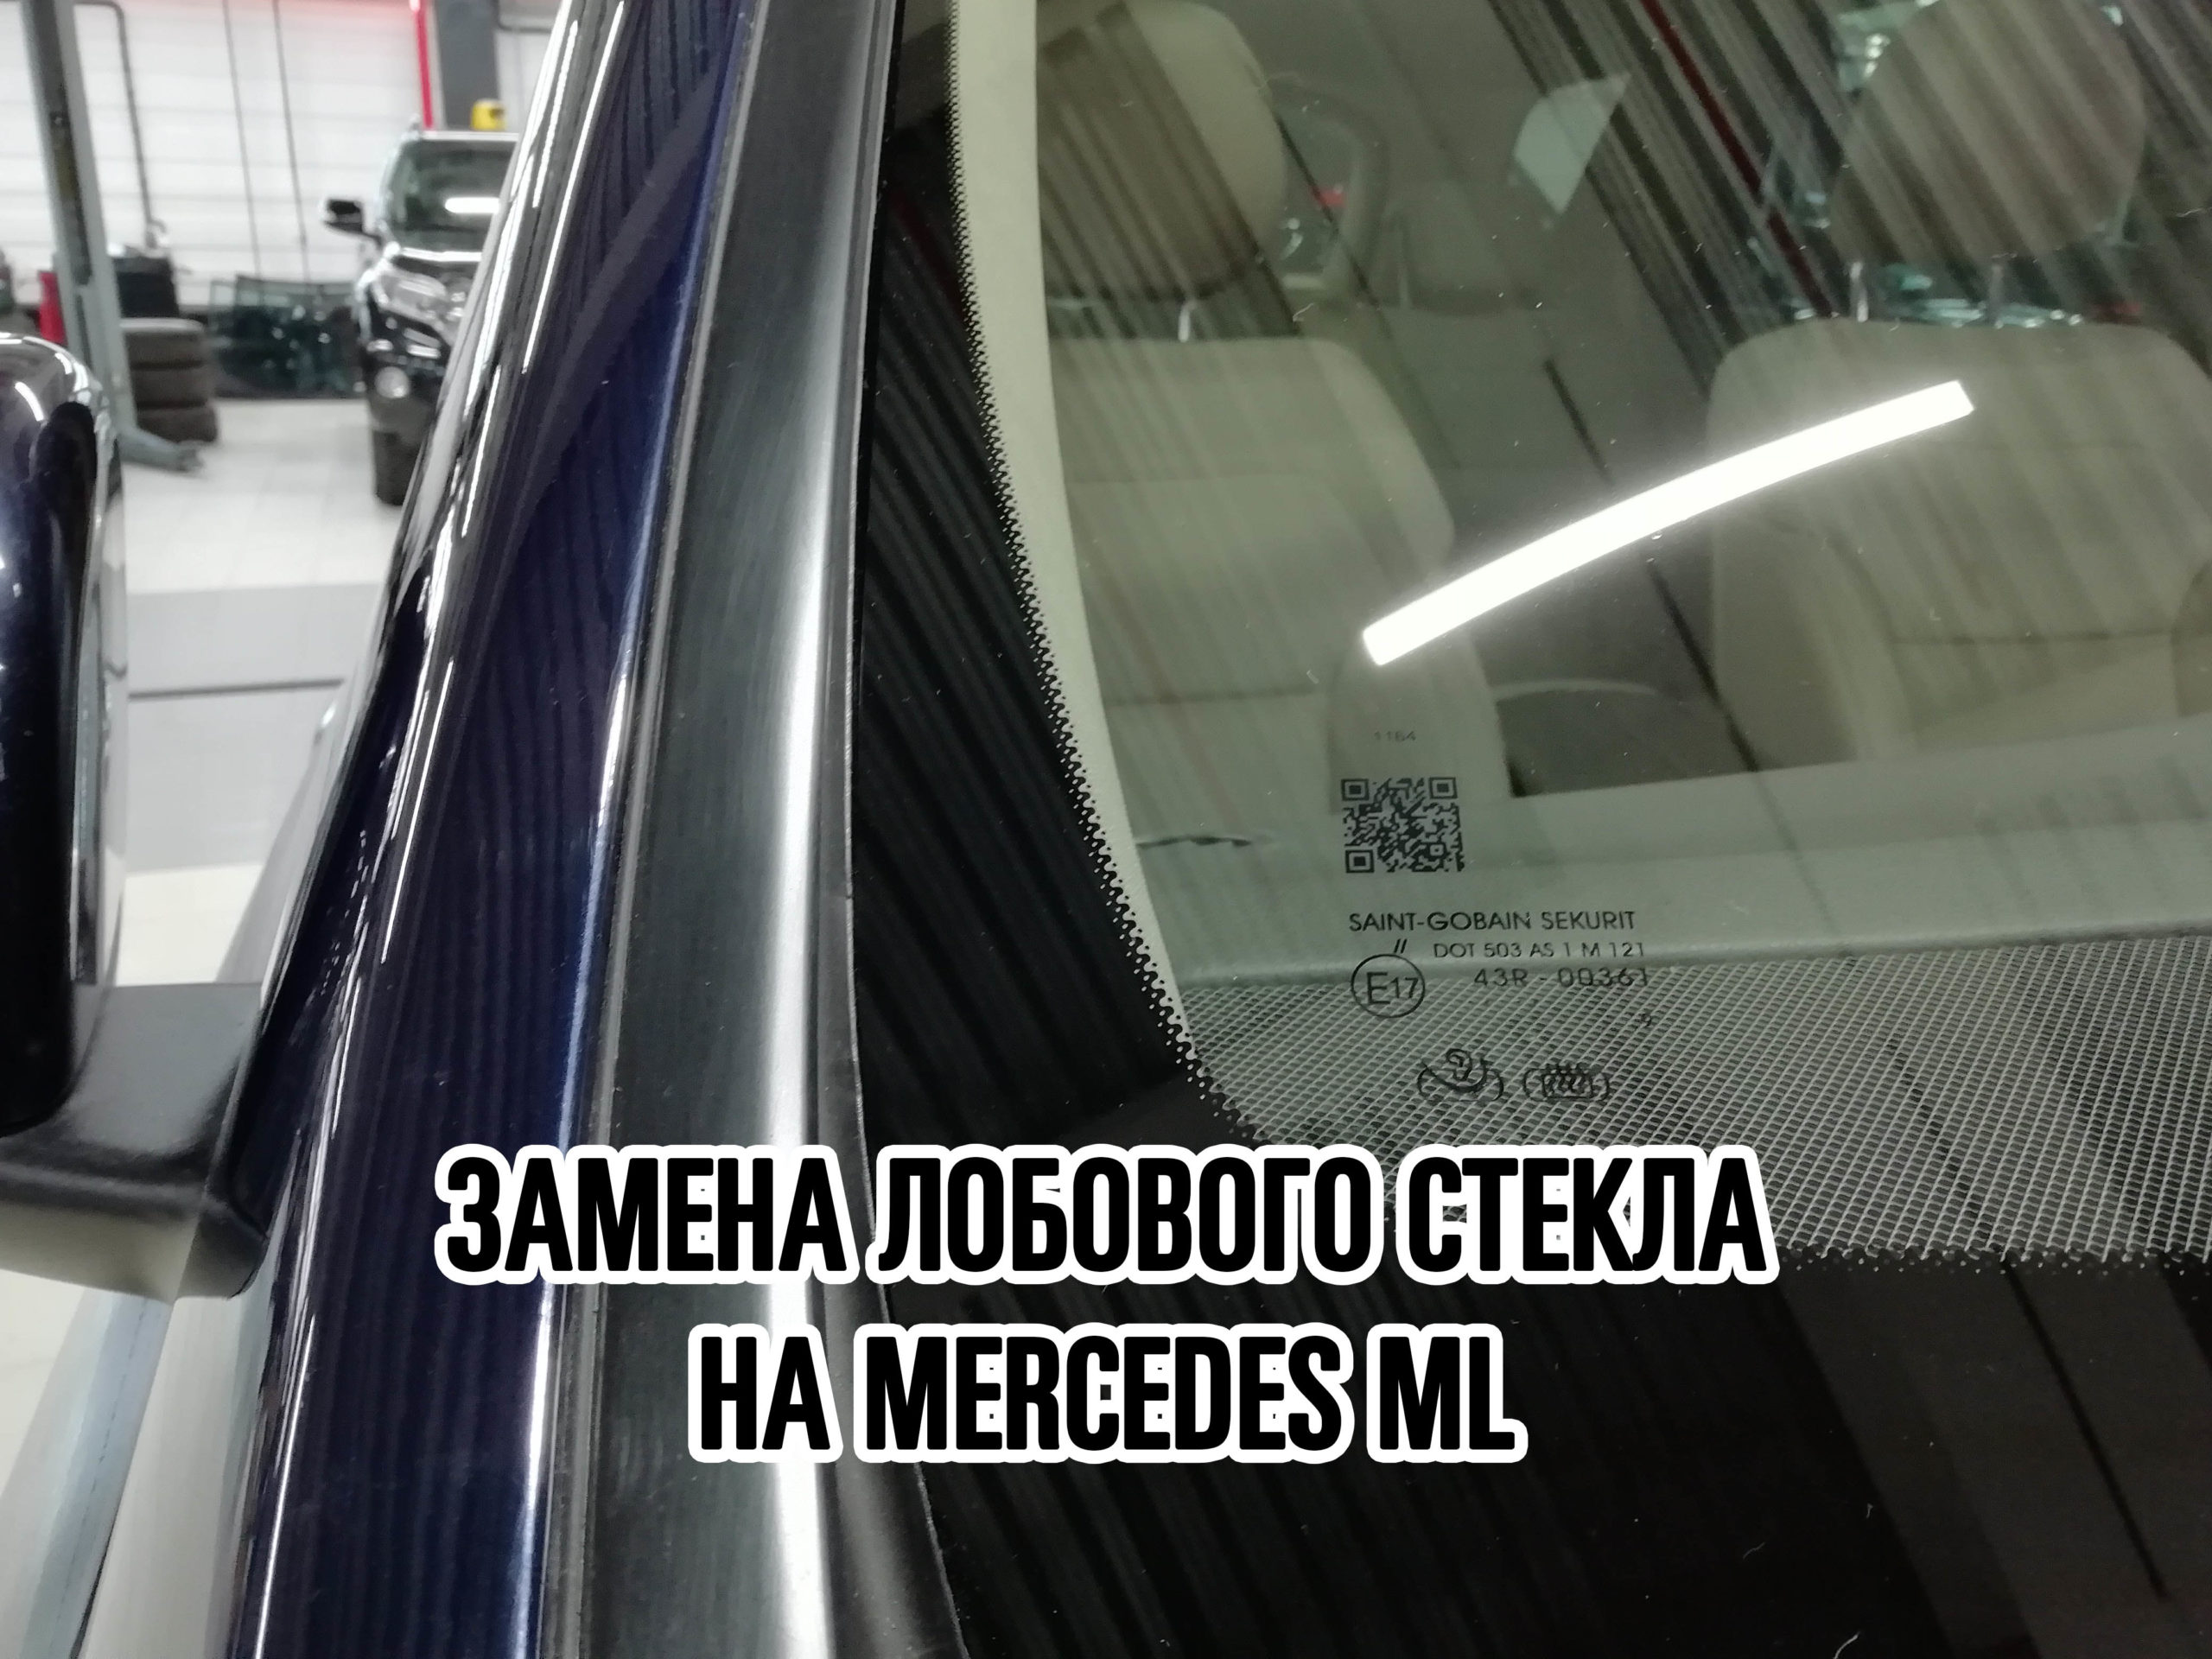 Лобовое стекло на Mercedes ML купить и установить в Москве